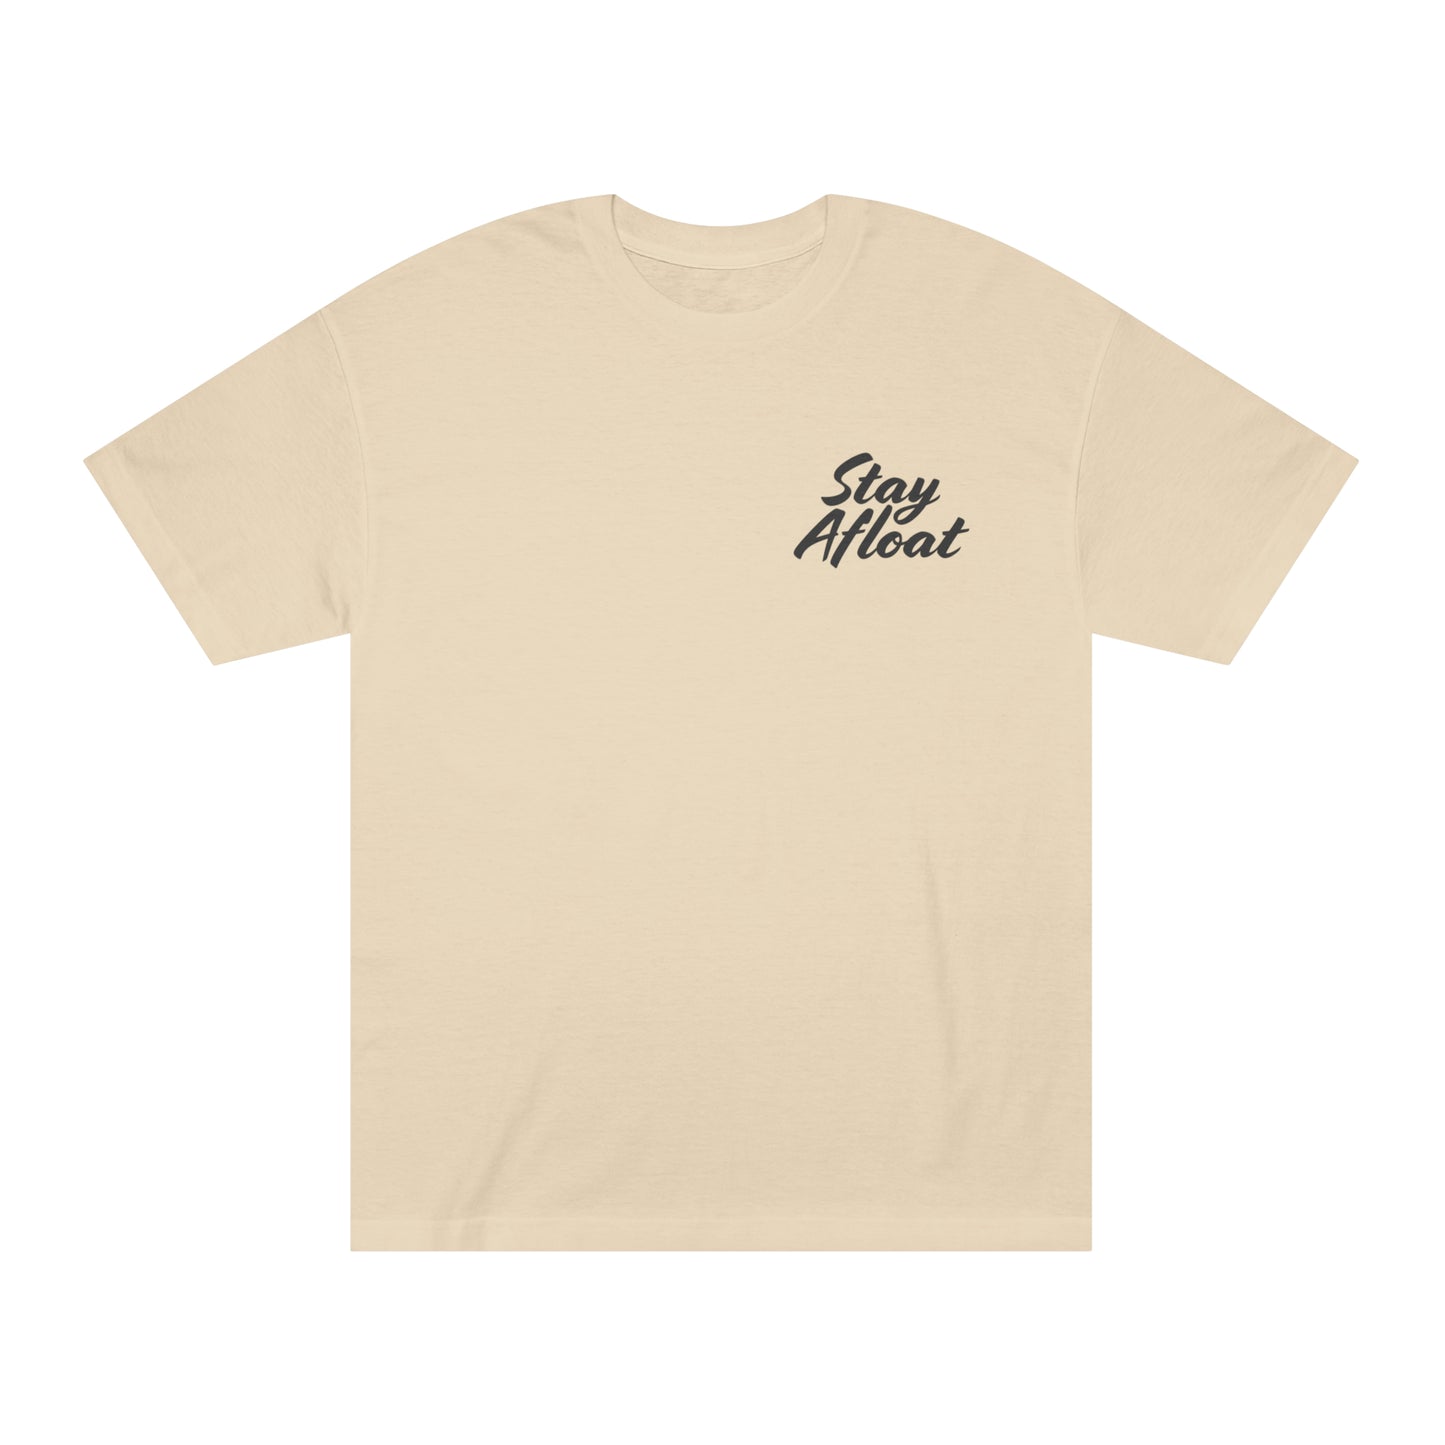 Stay Afloat (basics) T-Shirt